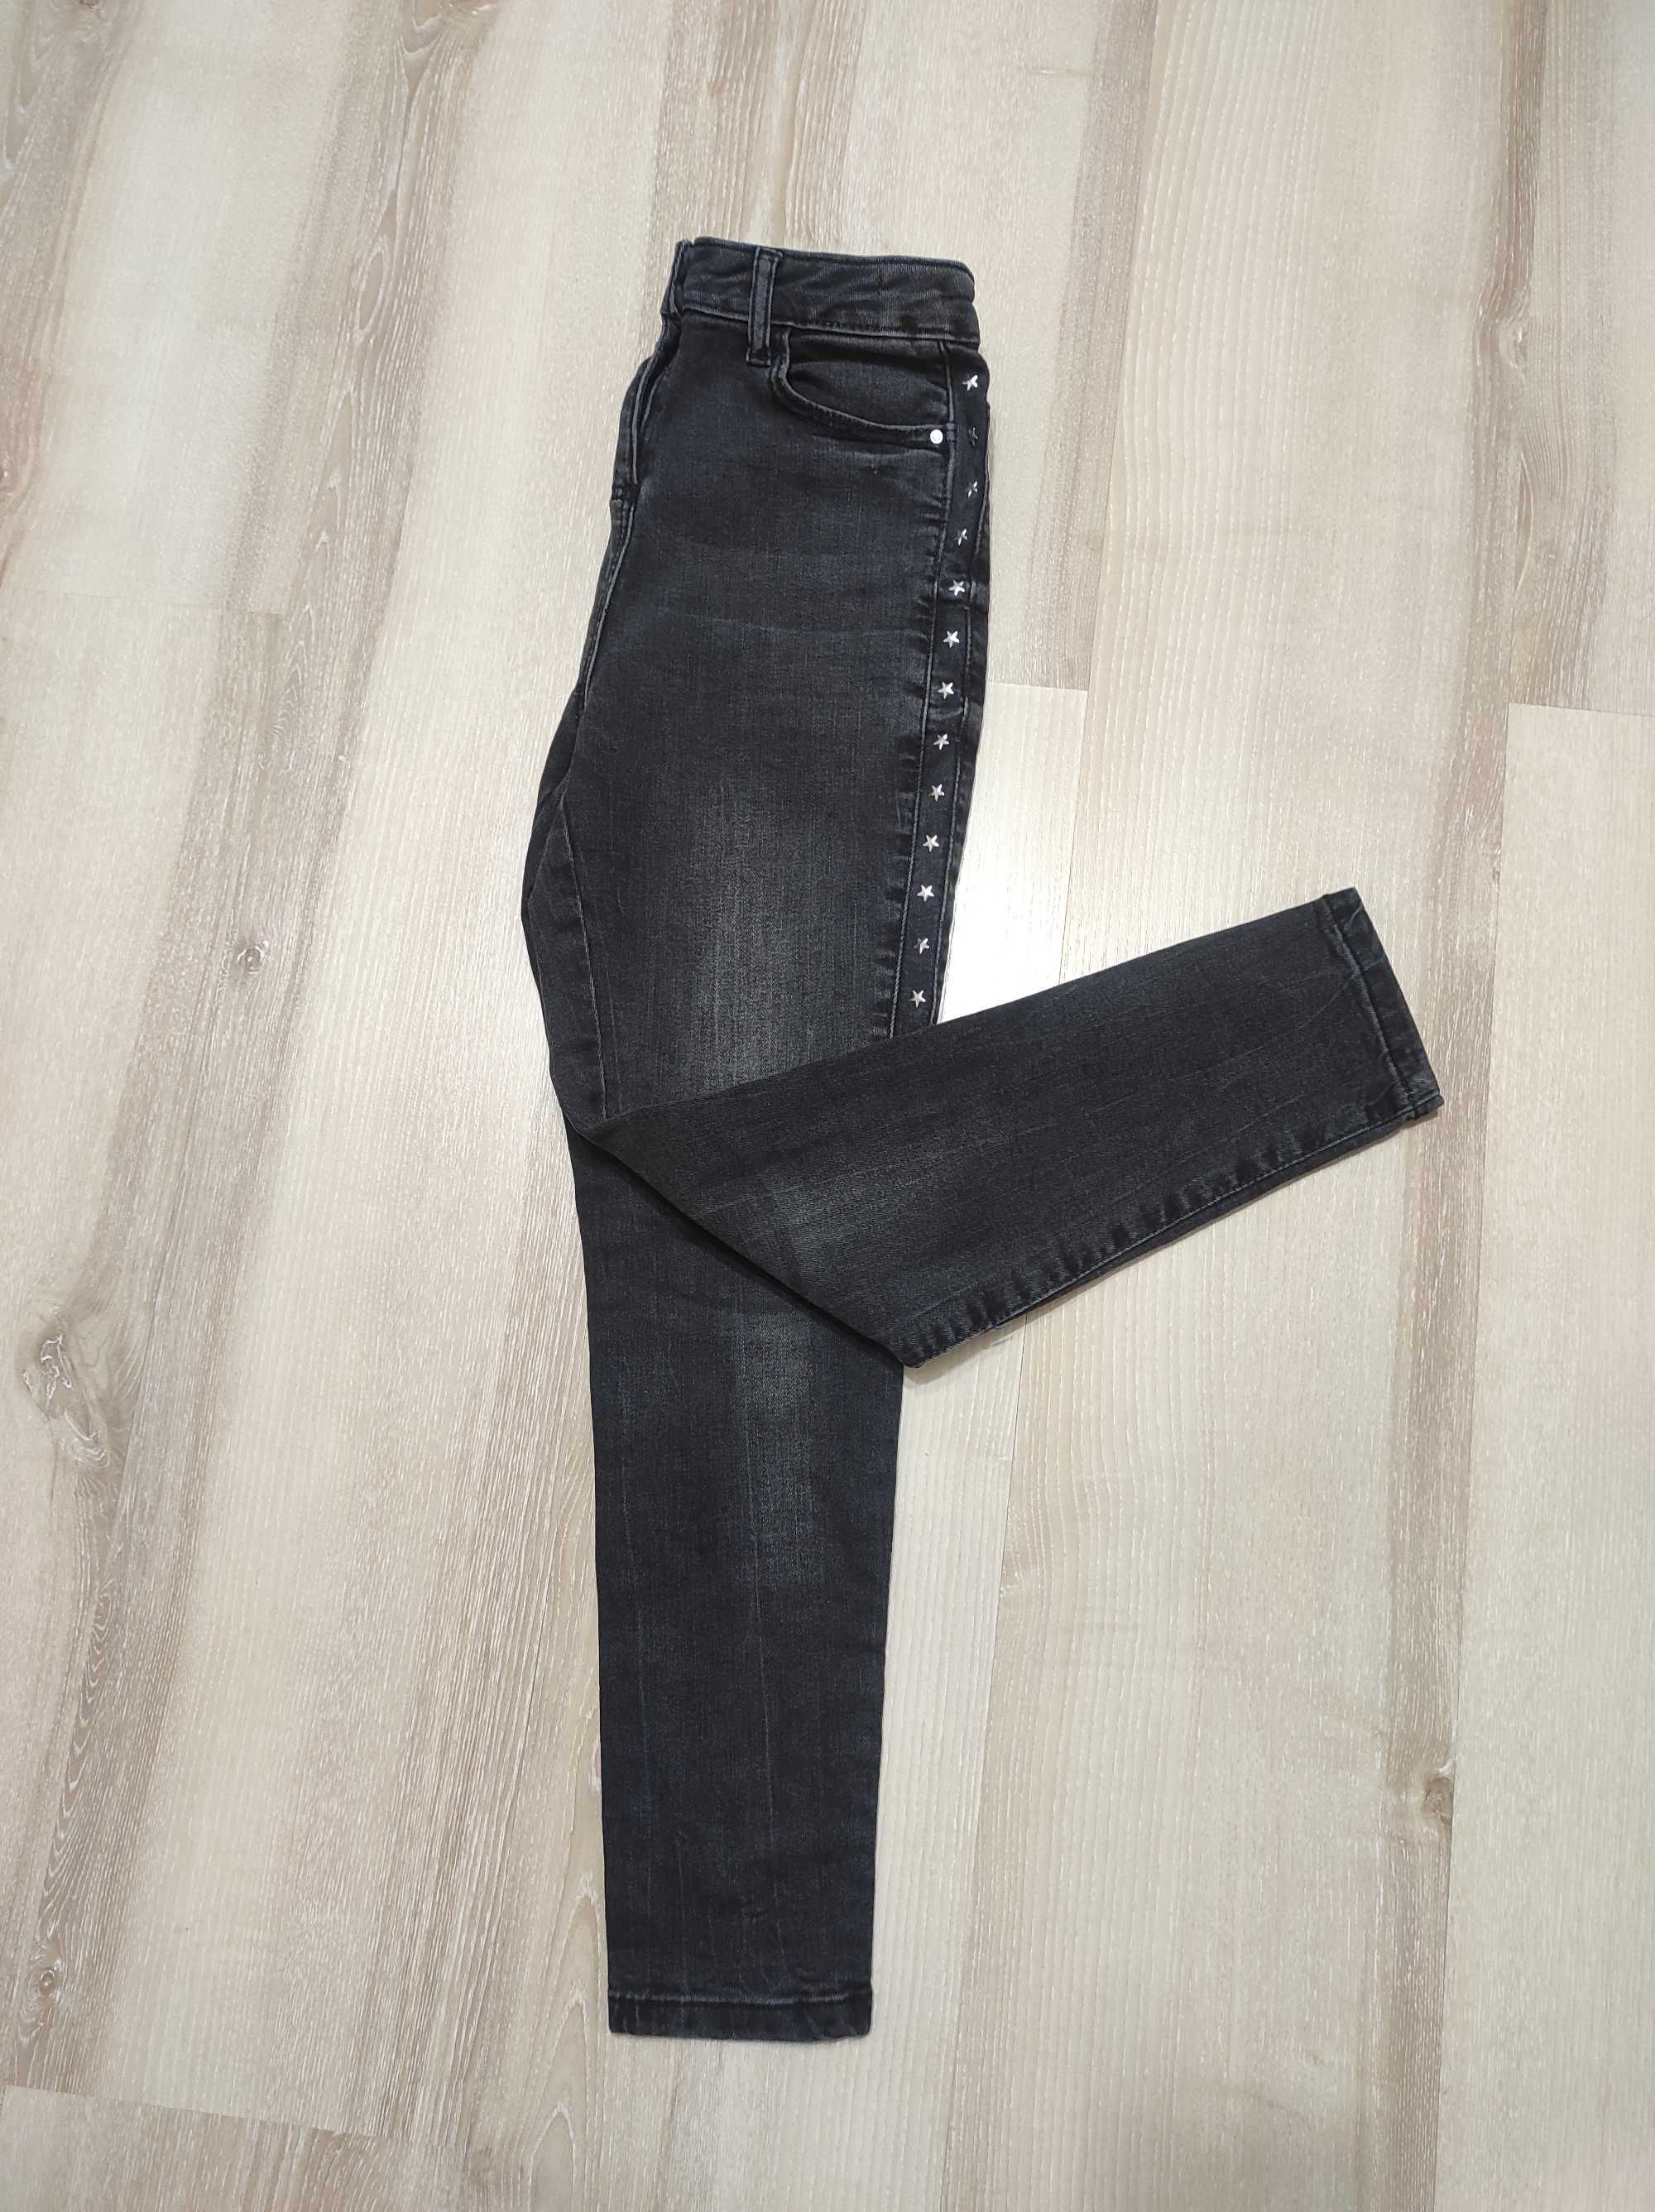 Высокие скинни джинсы, стрейч джинсы slim с высокой посадкой на 10 лет